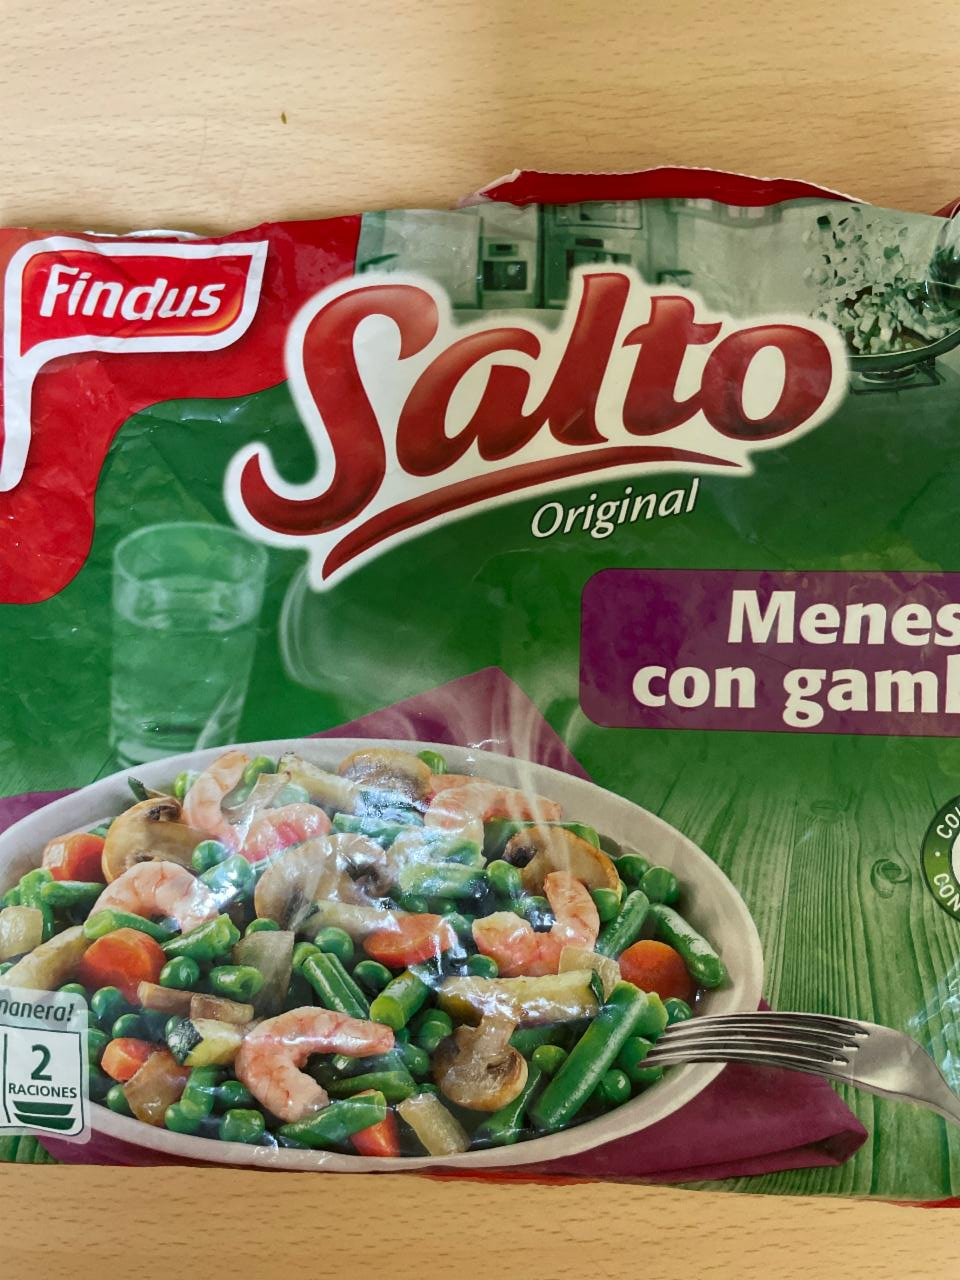 Фото - Овощи с креветками Saltó Findus